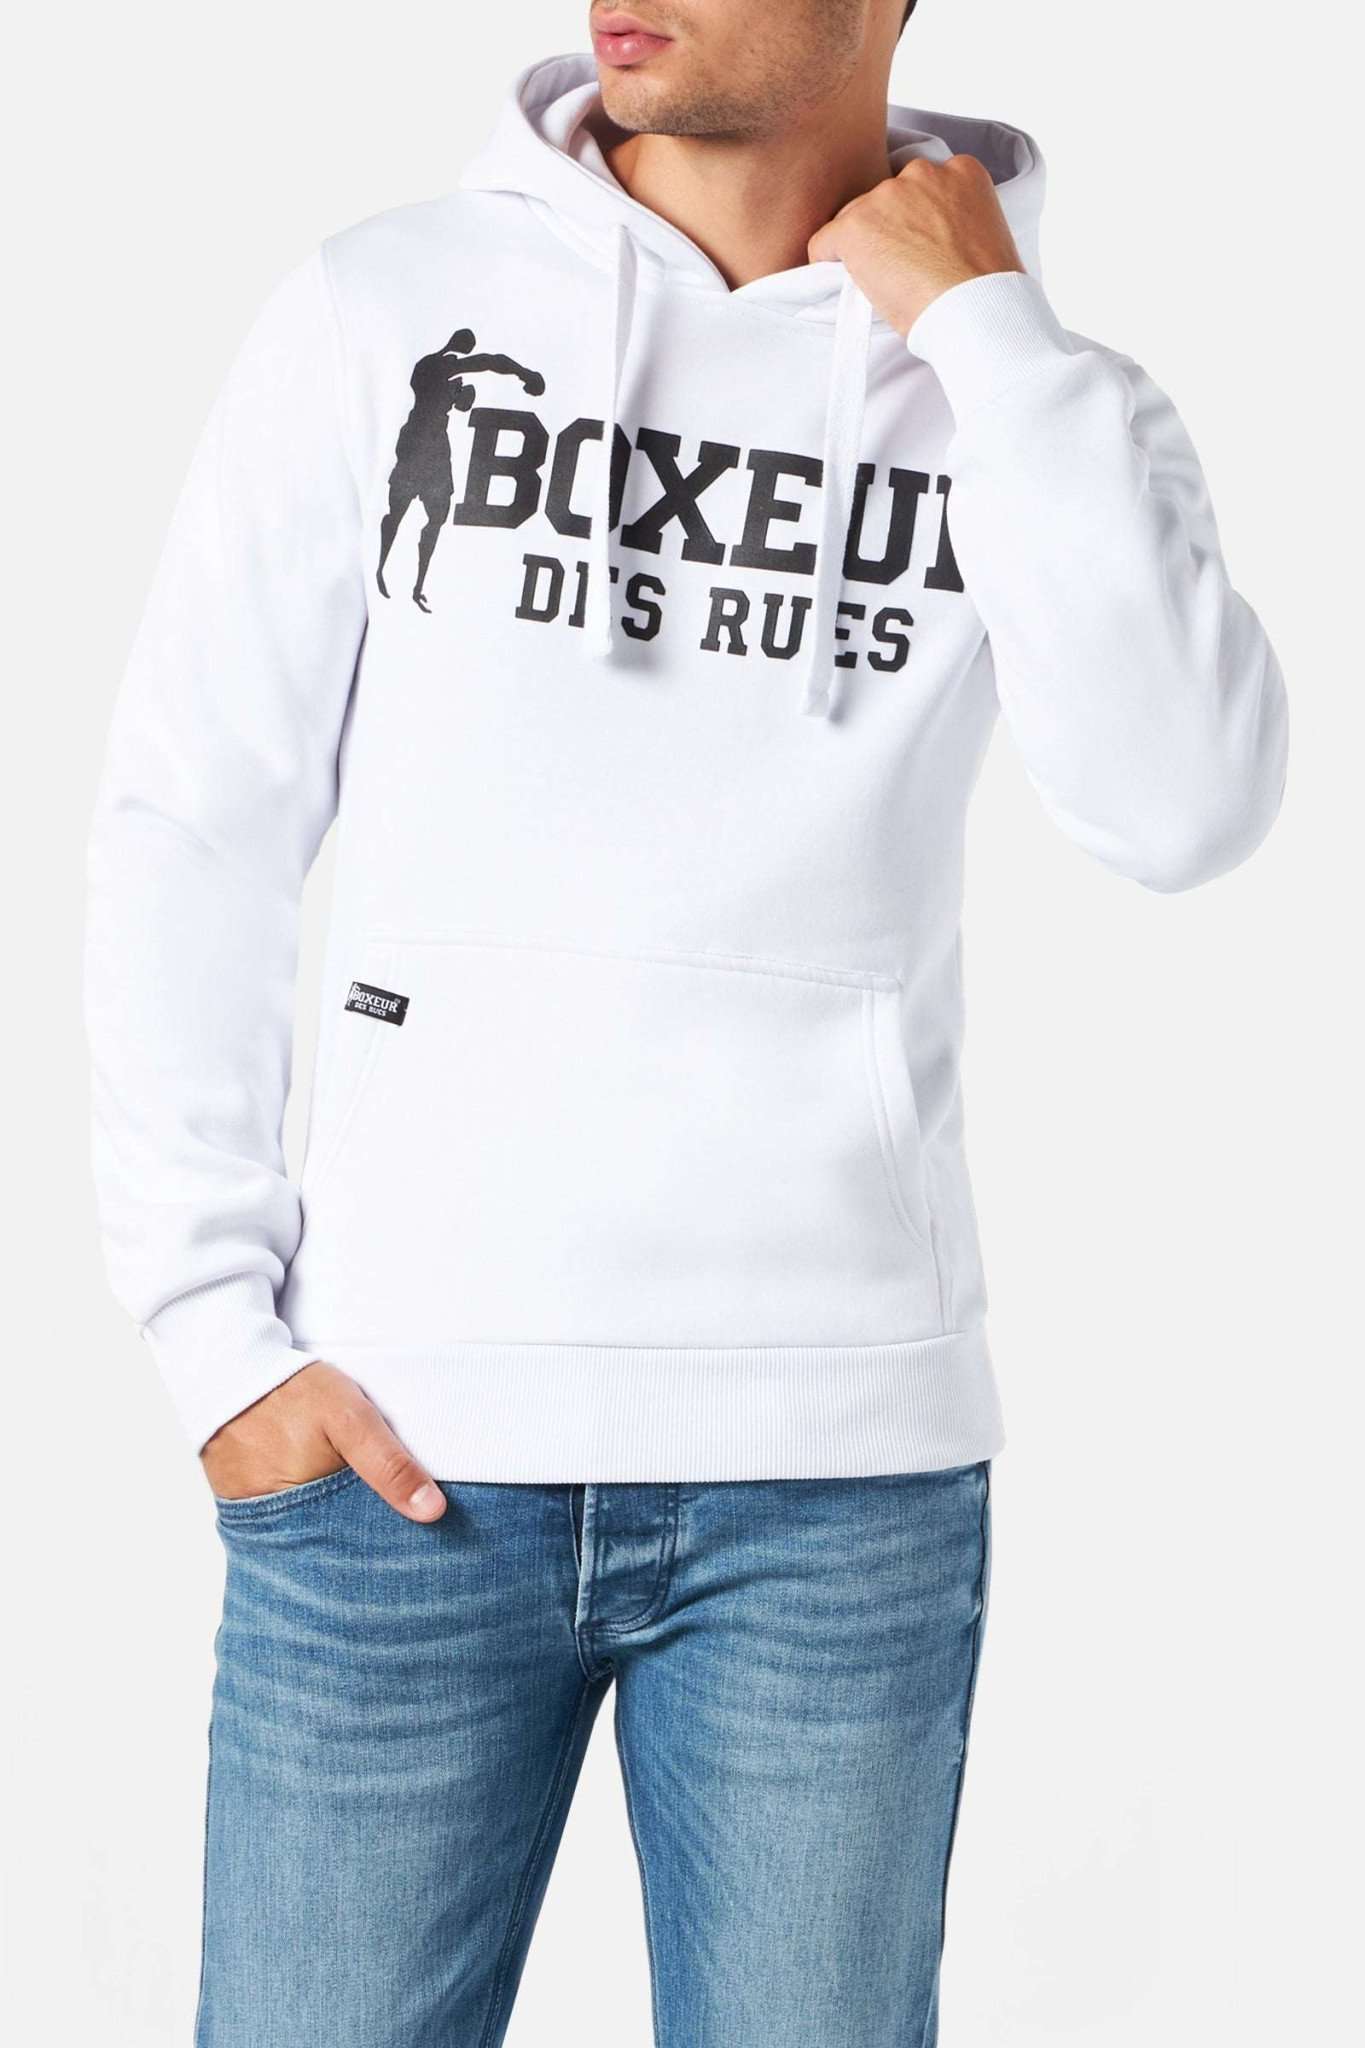 Man Hoodie Sweatshirt in Whiteblack Kapuzenpullover Boxeur des Rues   